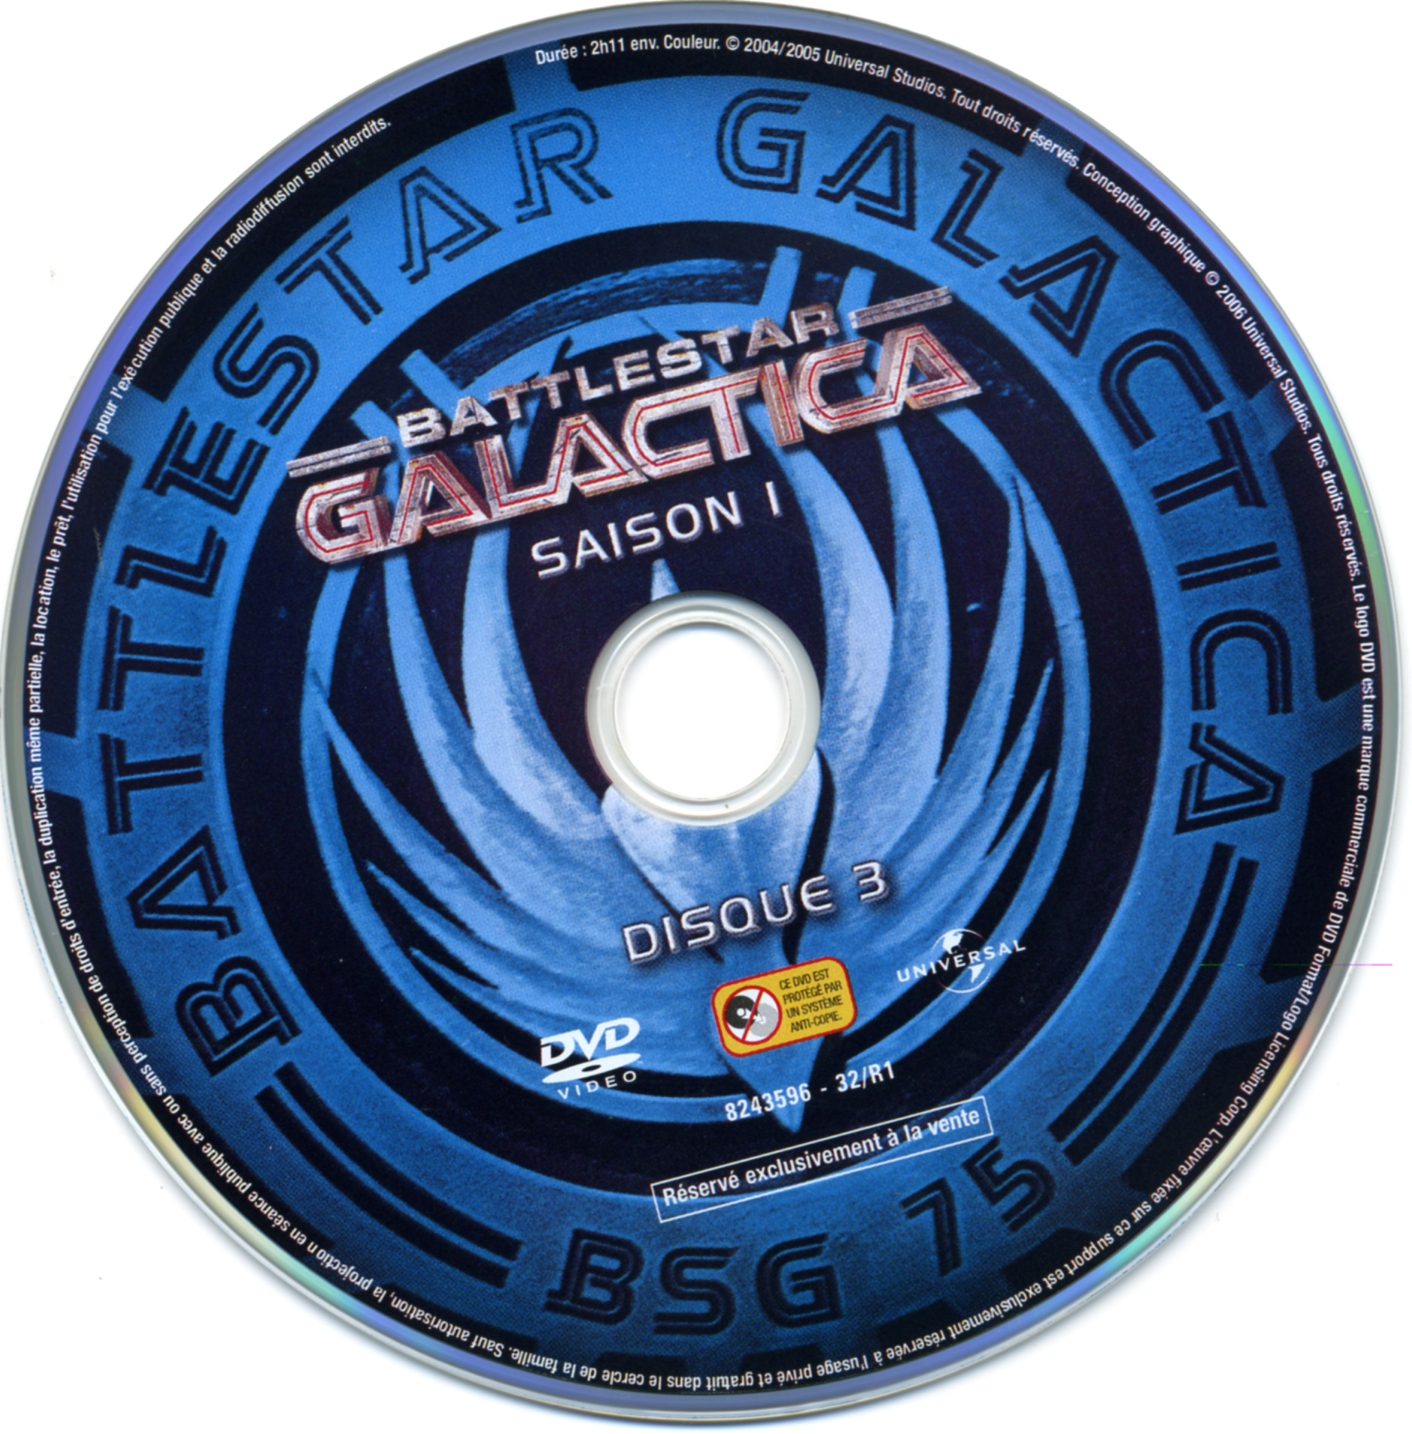 Galactica saison 1 vol 3